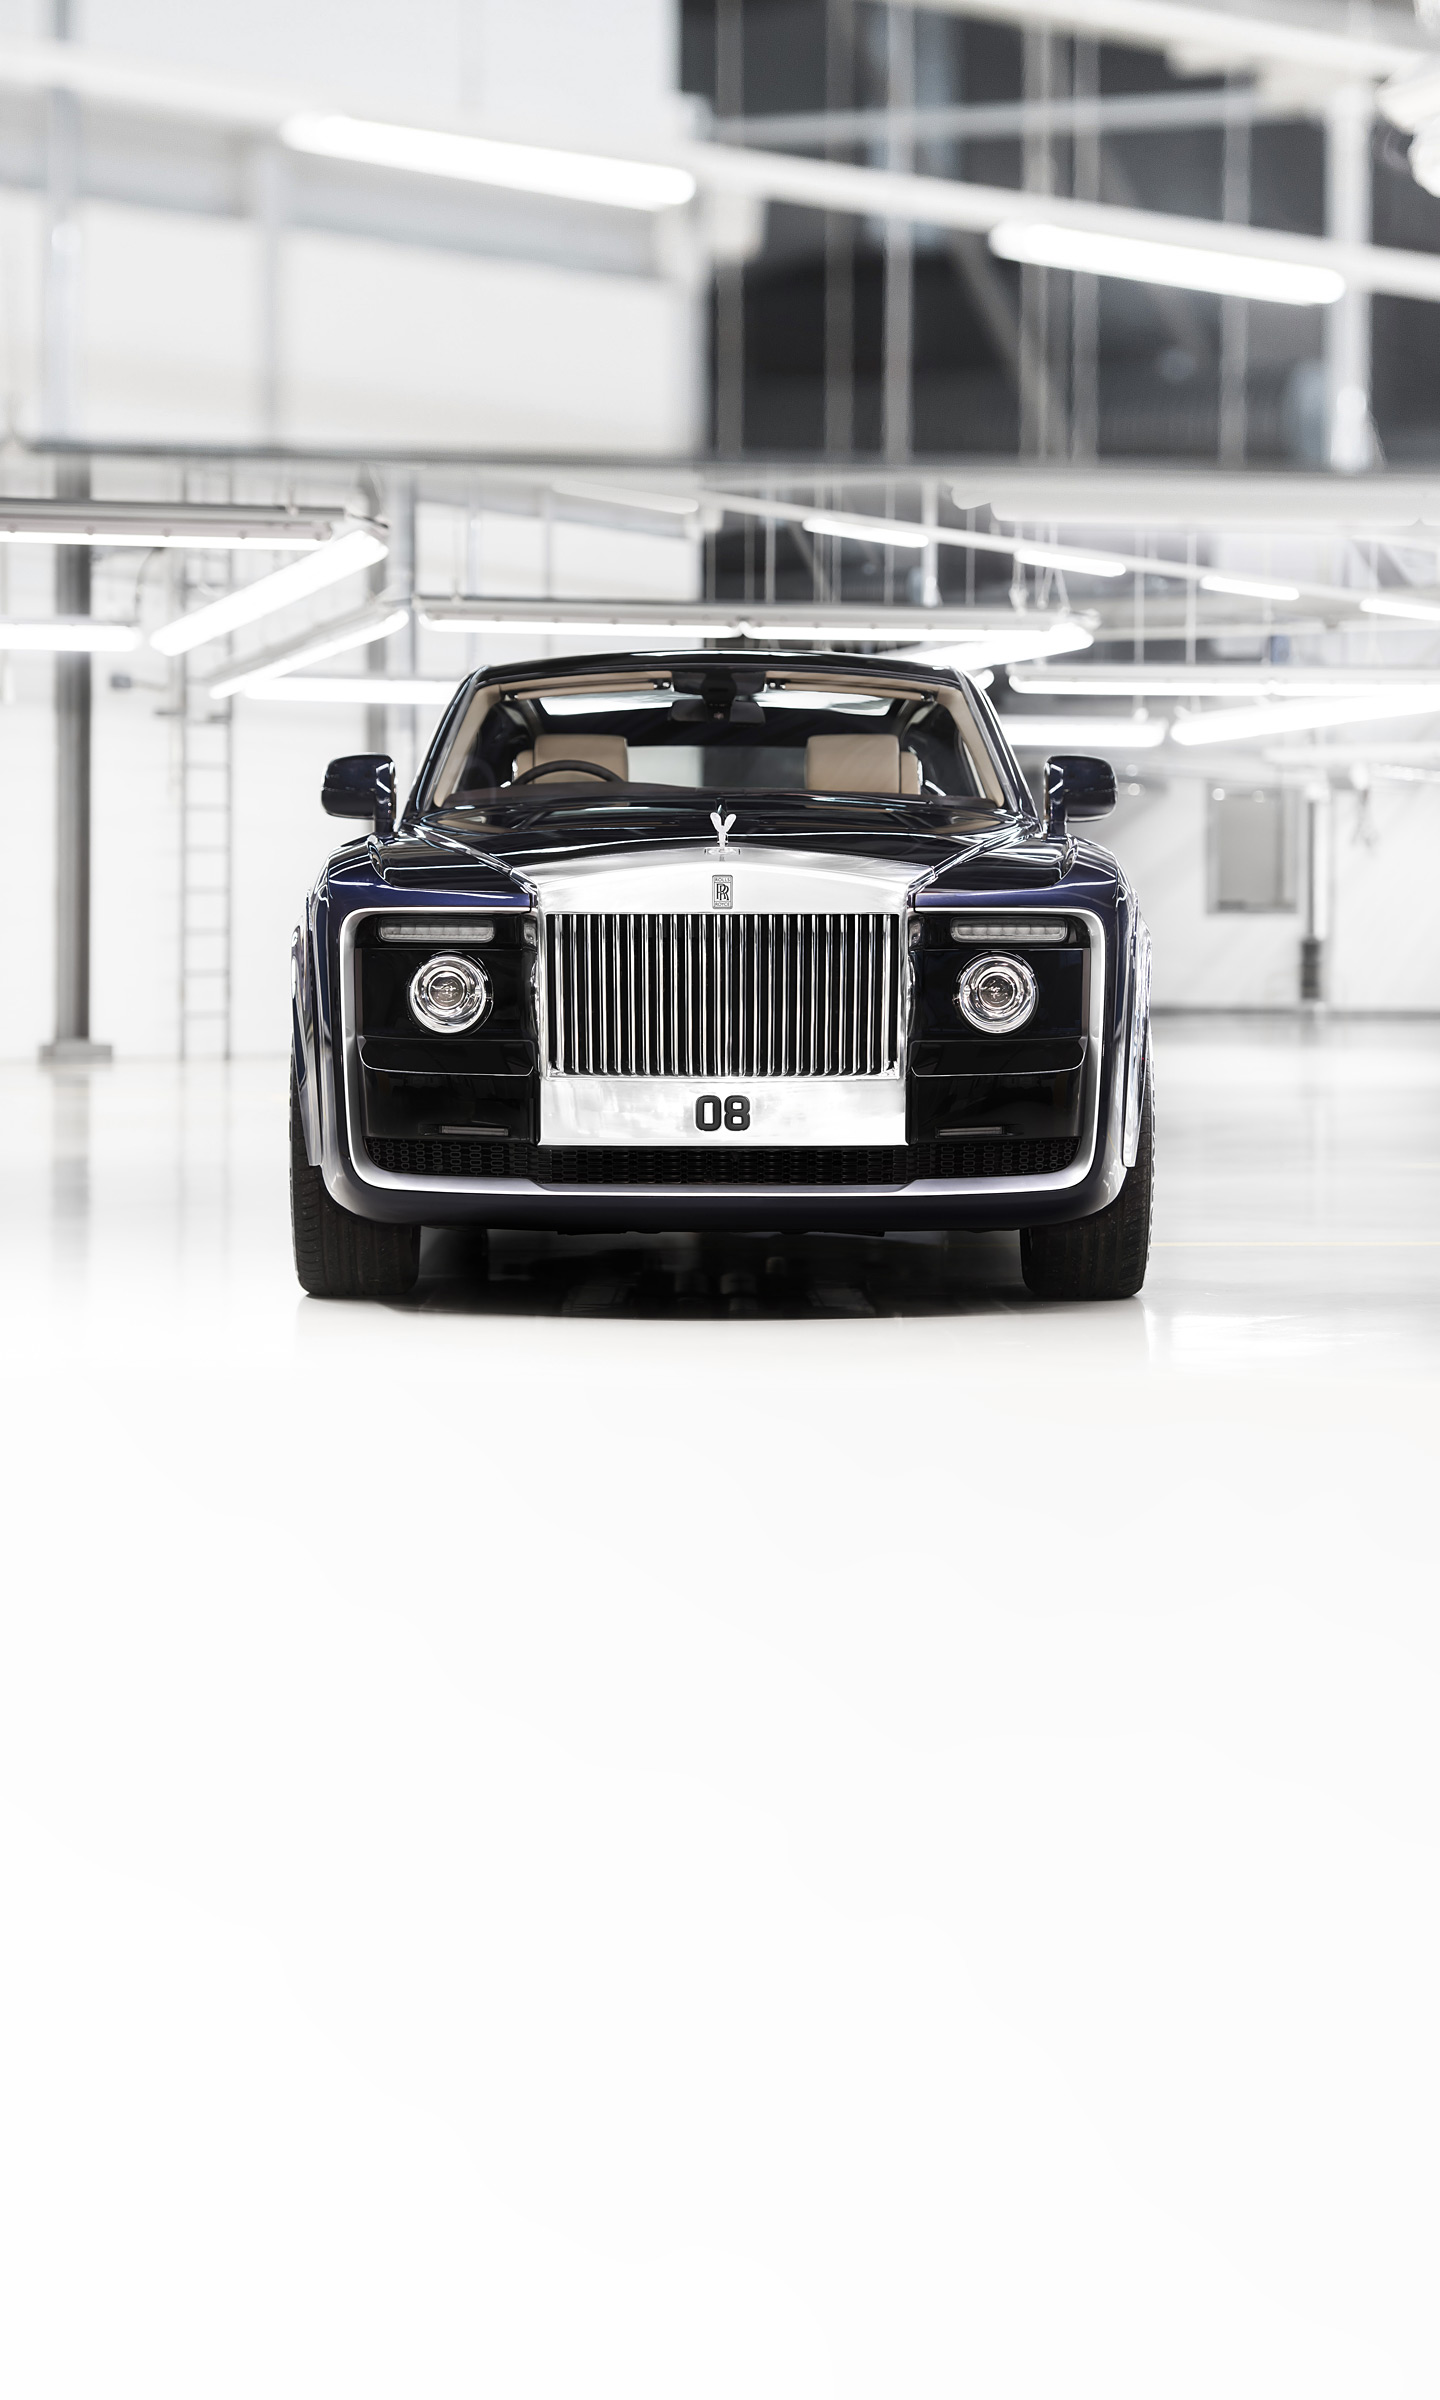  2017 Rolls-Royce Sweptail Wallpaper.